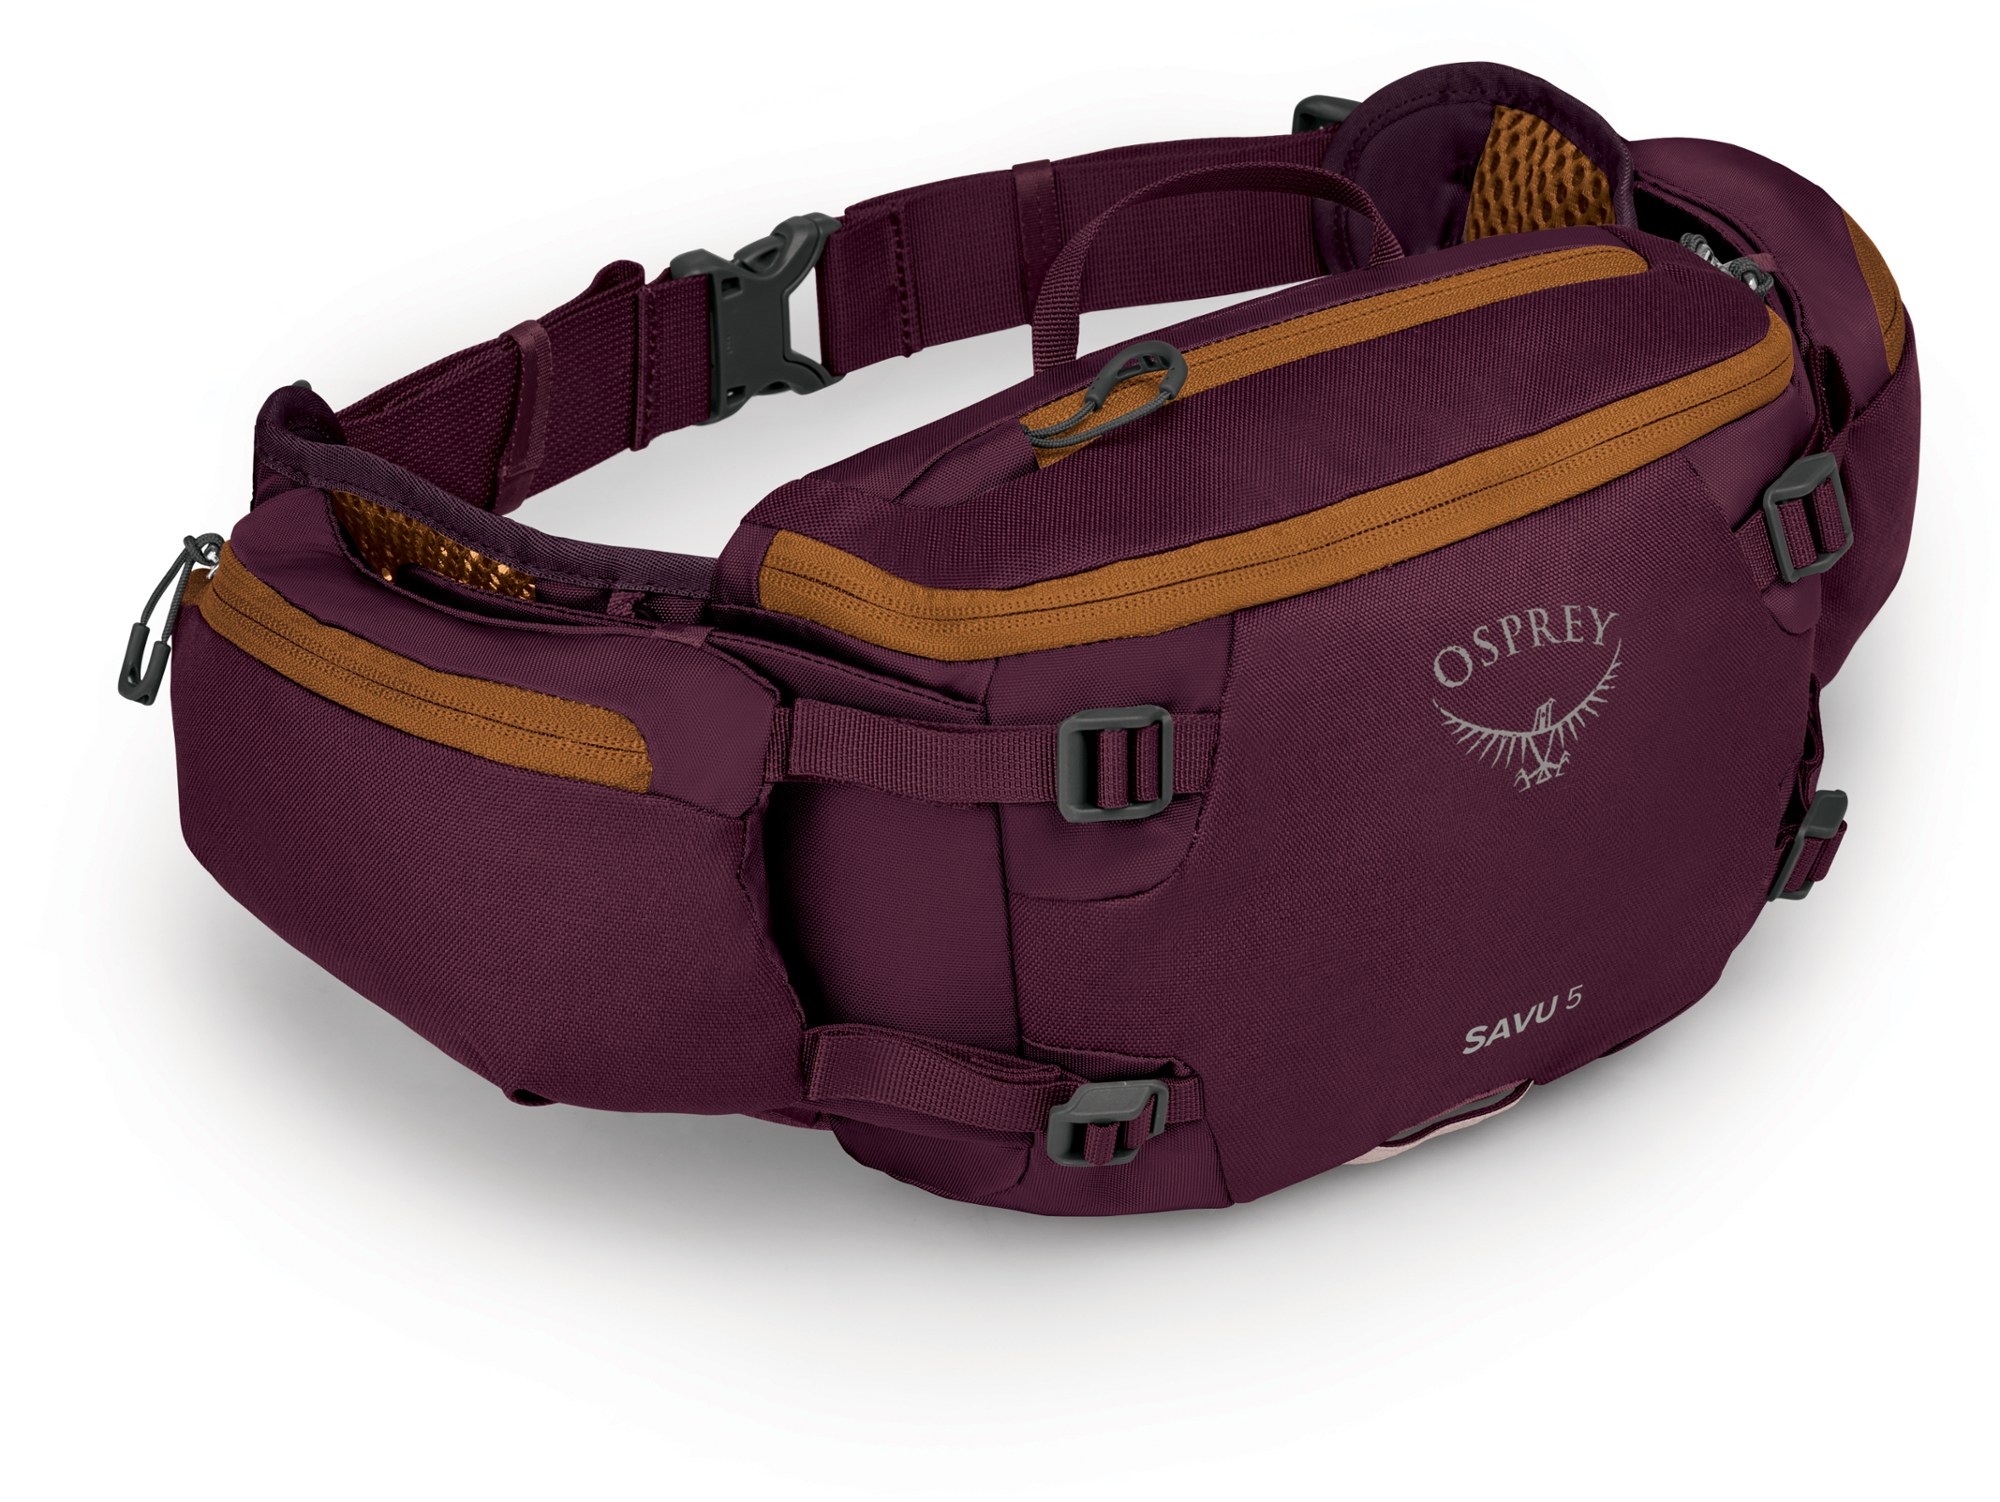 Savu 5 Гидратационная поясная сумка Osprey, фиолетовый